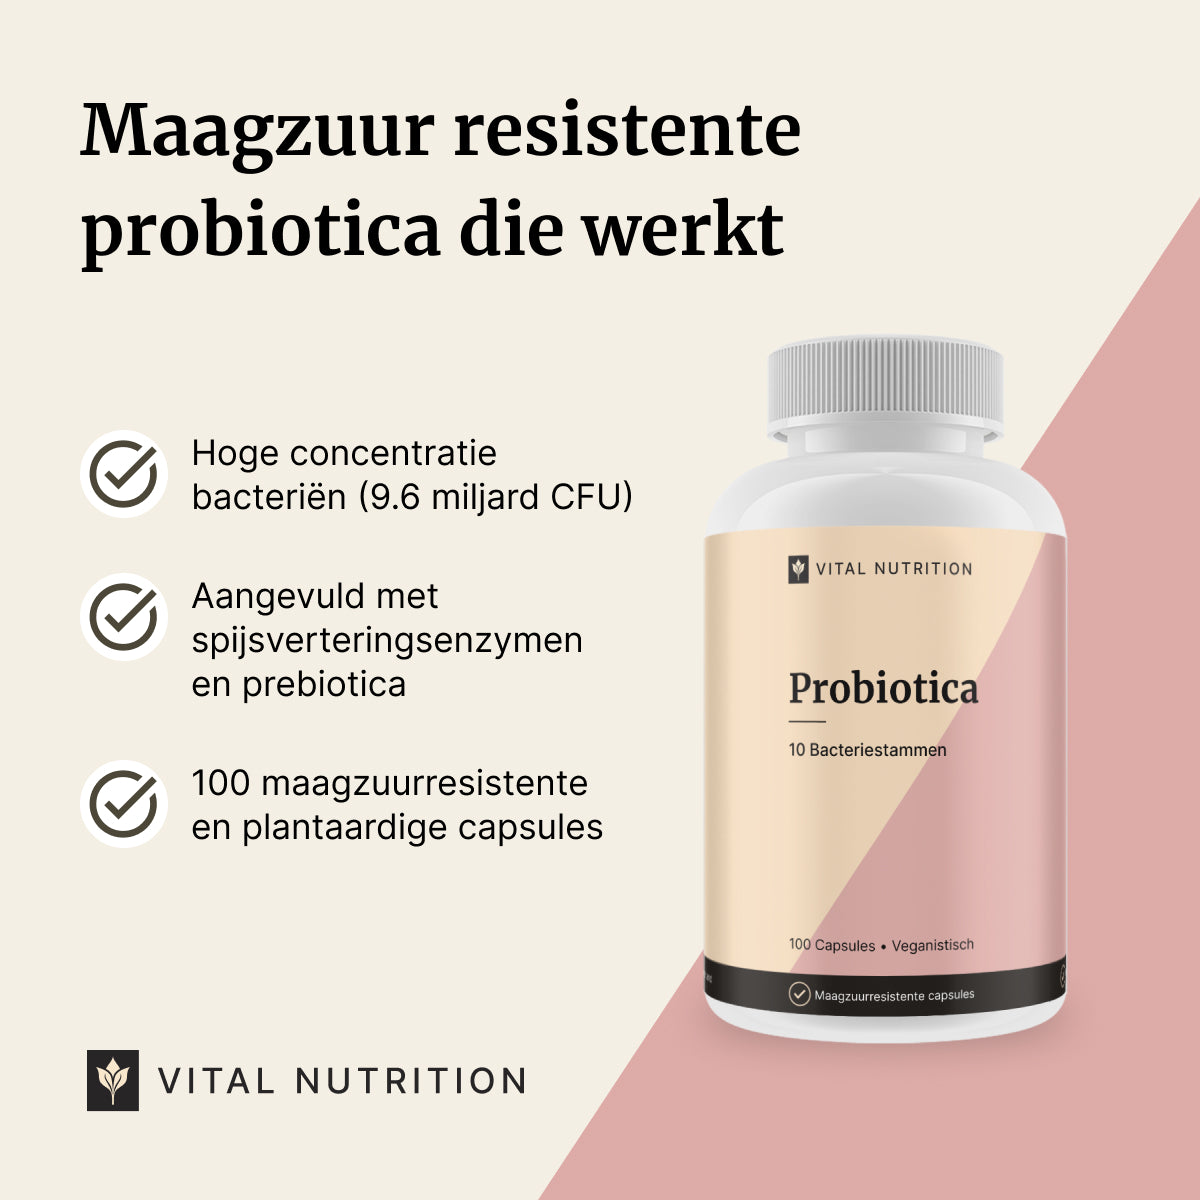 Beschrijving van de voordelen van Probiotica van Vital Nutrition